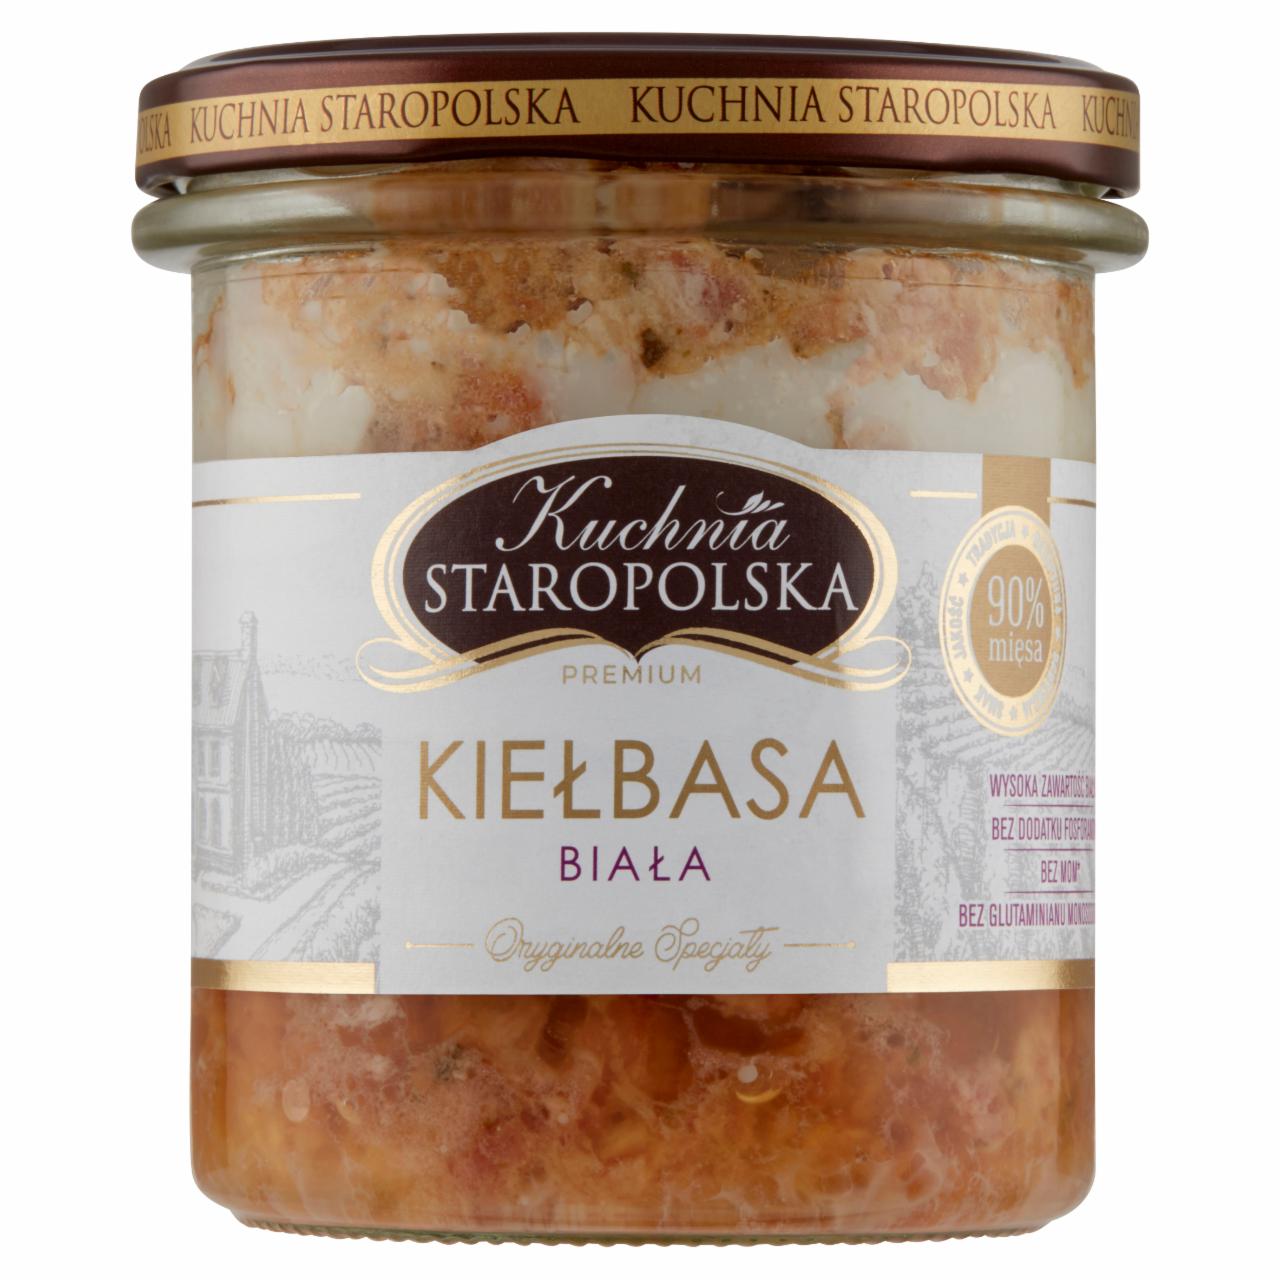 Zdjęcia - Kuchnia STAROPOLSKA Premium Kiełbasa biała 300 g